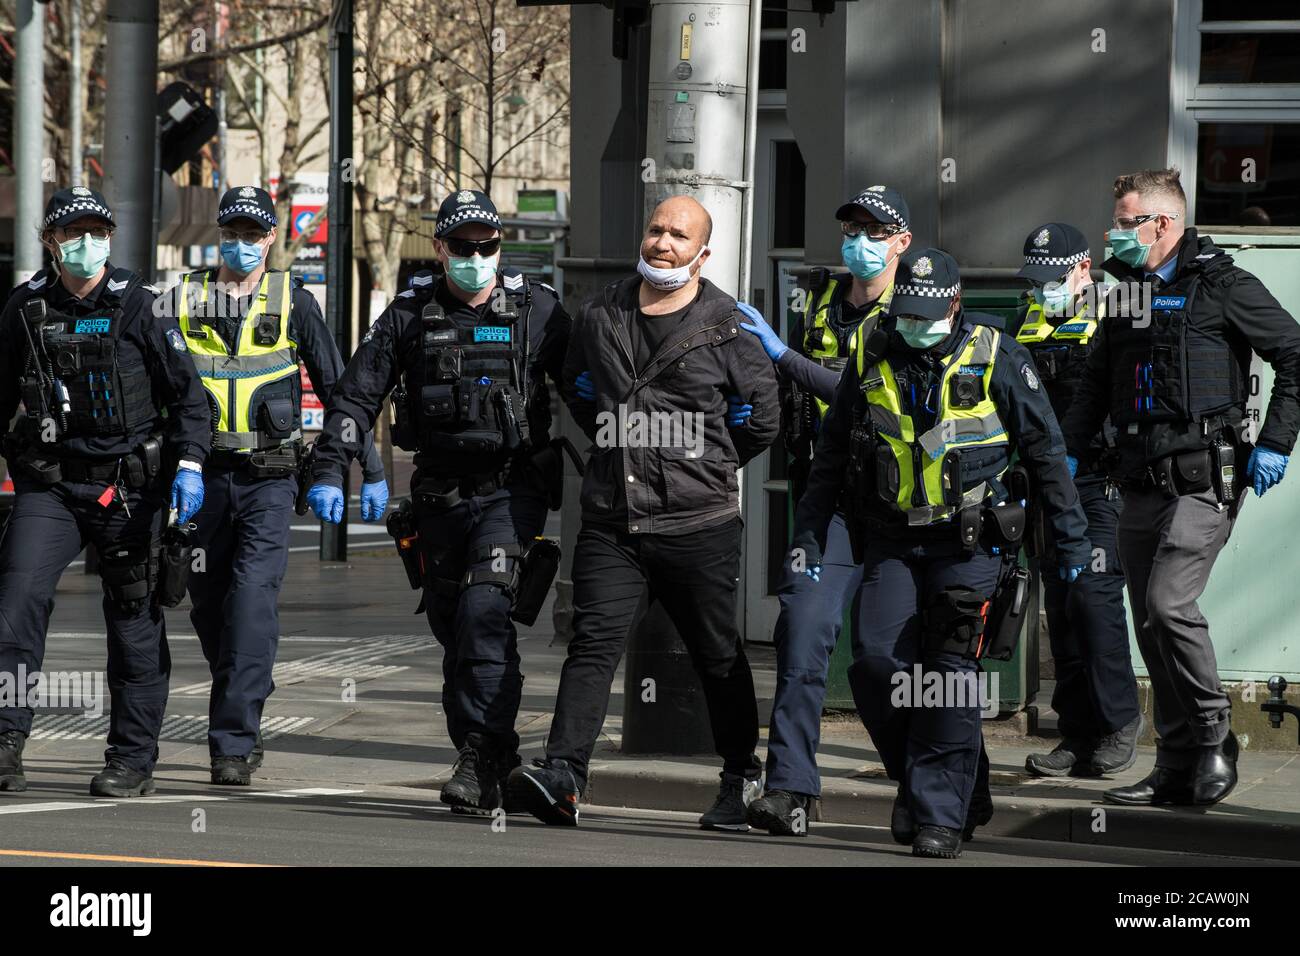 Melbourne, Australien am 9. August 2020 verhaften einige der zahlreichen viktorianischen Polizeibeamten, die gegen maskenfeindliche Proteste eingesetzt wurden, einen Mann, weil sie sich weigerten, eine Maske außerhalb des Landtags zu verhaften. Kredit: Michael Currie/Alamy Live Nachrichten Stockfoto